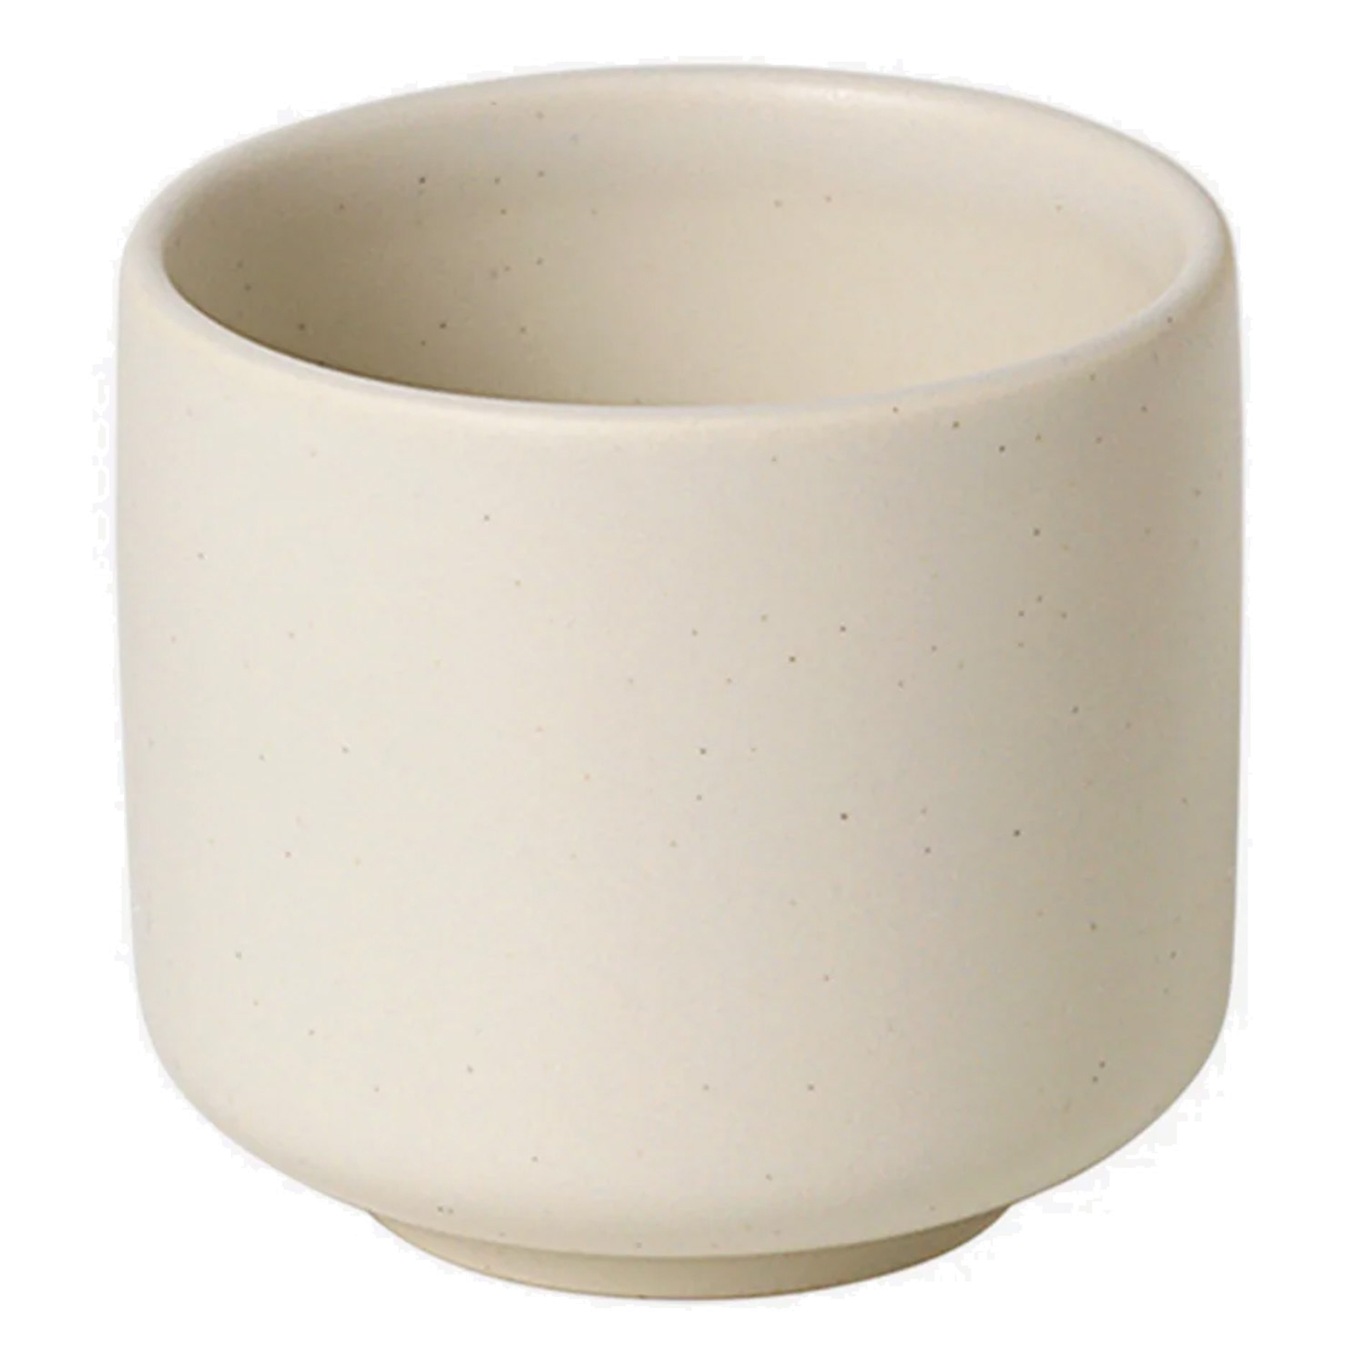 Ceramic Pisu Kopp 7.5 cm, Vanilla White